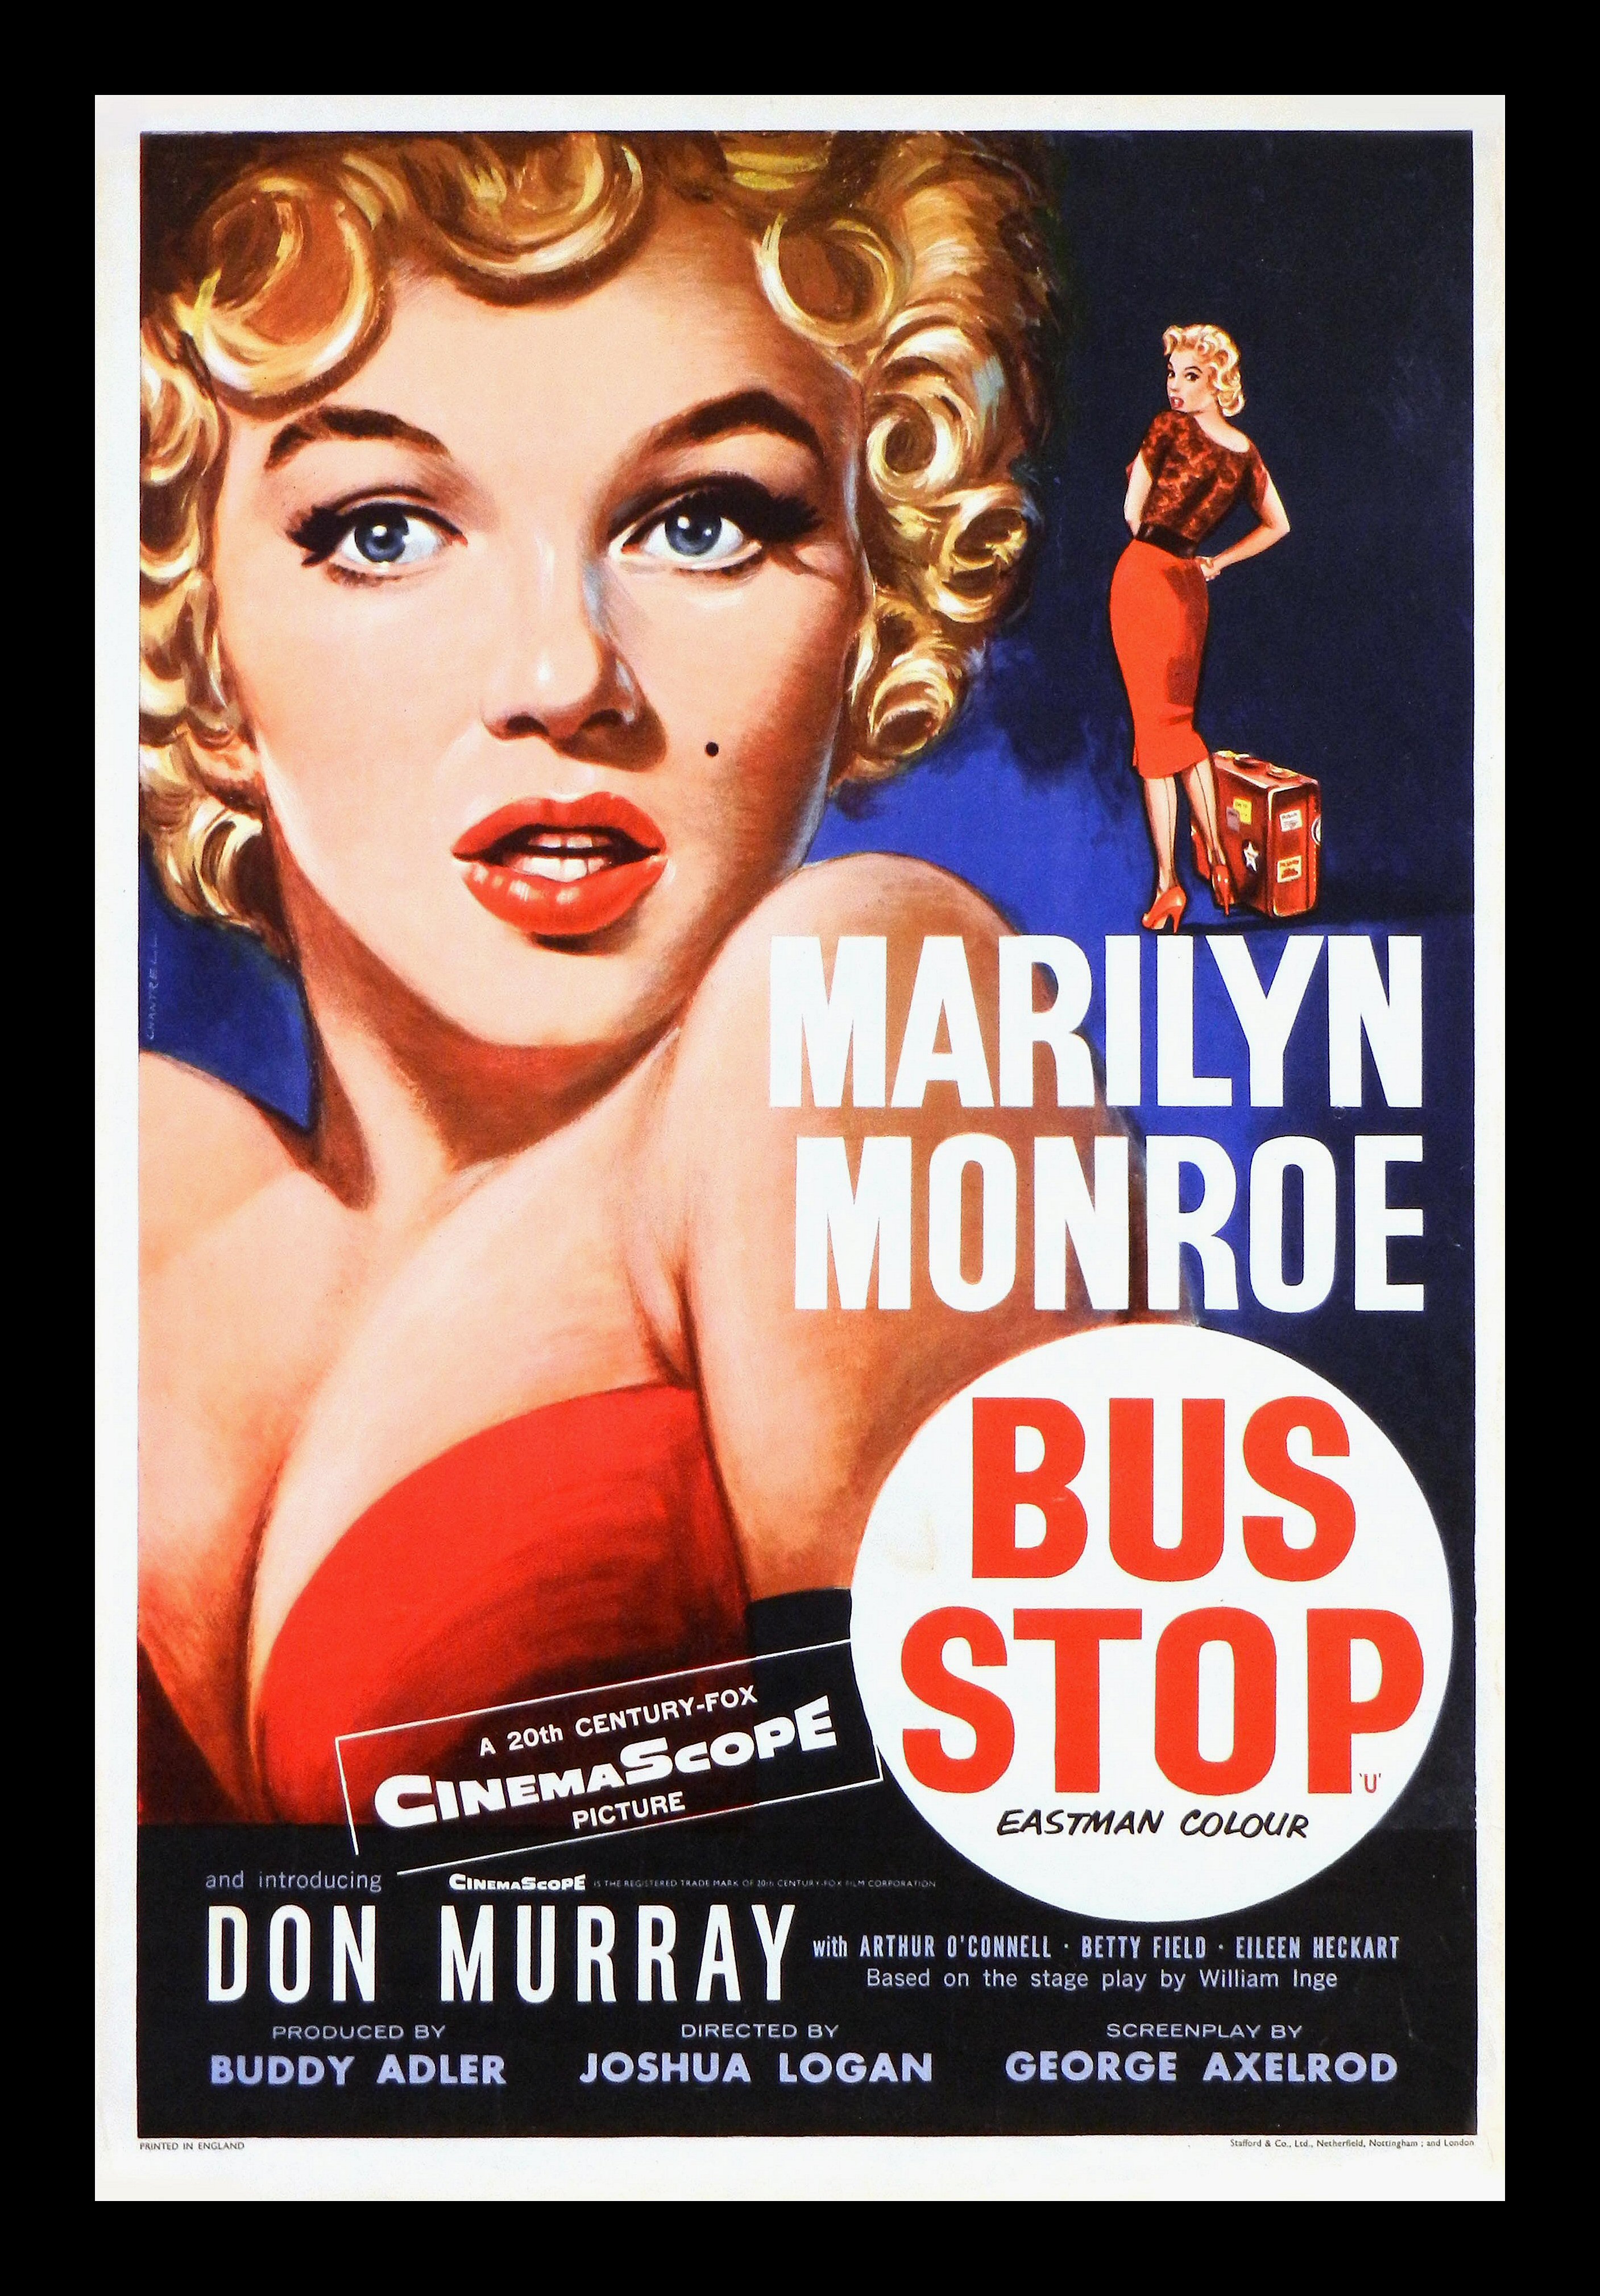 Marilyn Monroe Movie Posters | Original Vintage Film ...
